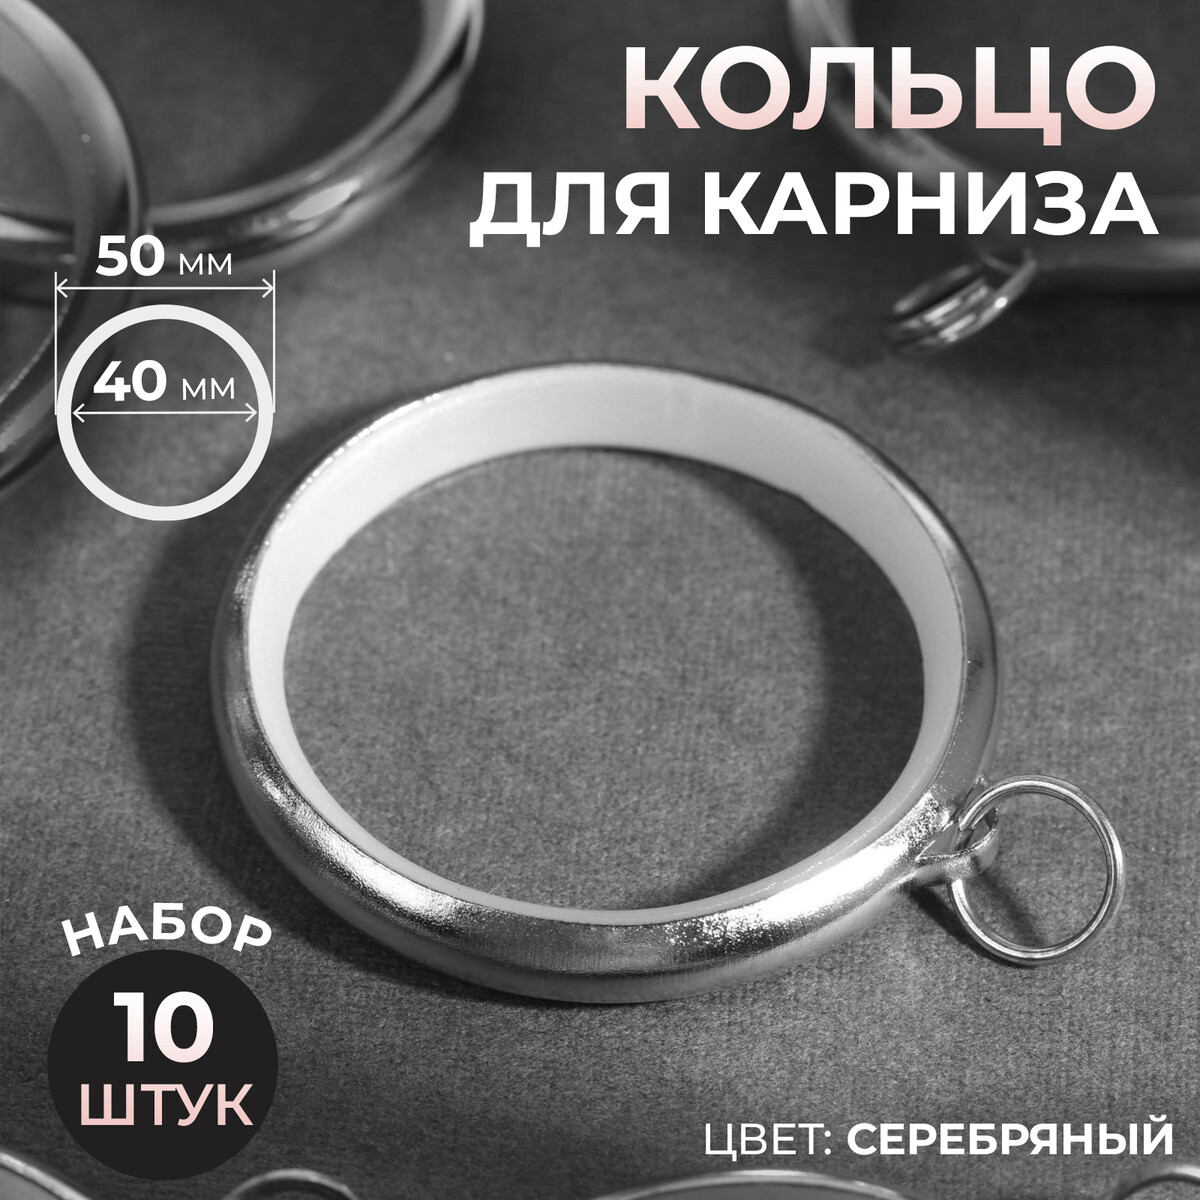 Кольцо для карниза, d = 40/50 мм, 10 шт, цвет серебряный кольцо для карниза разъемное d 35 38 мм 10 шт серебряный